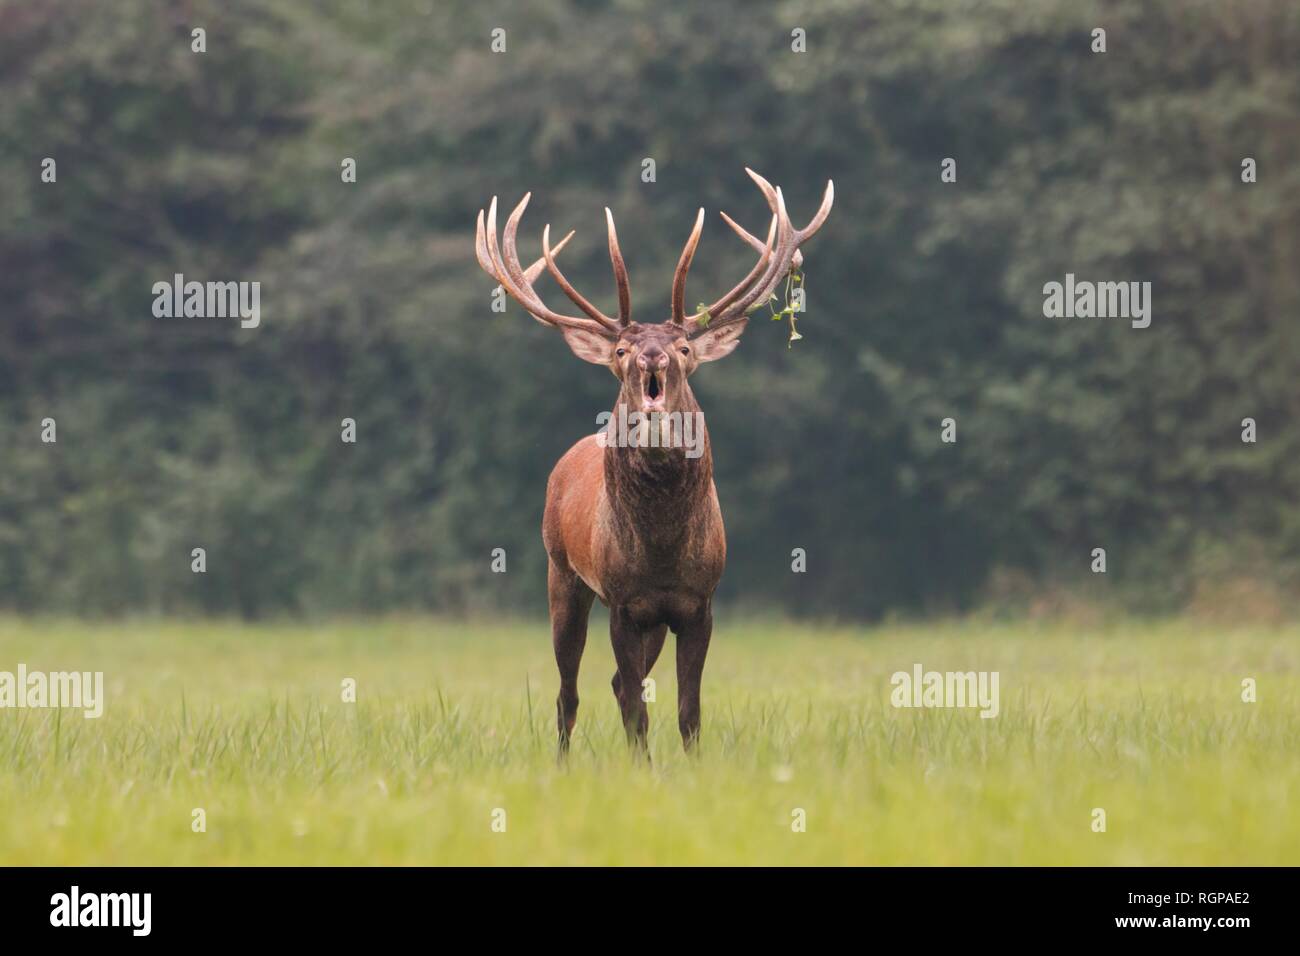 Red deer, cervus elaphus, stag roaring in mating season Stock Photo